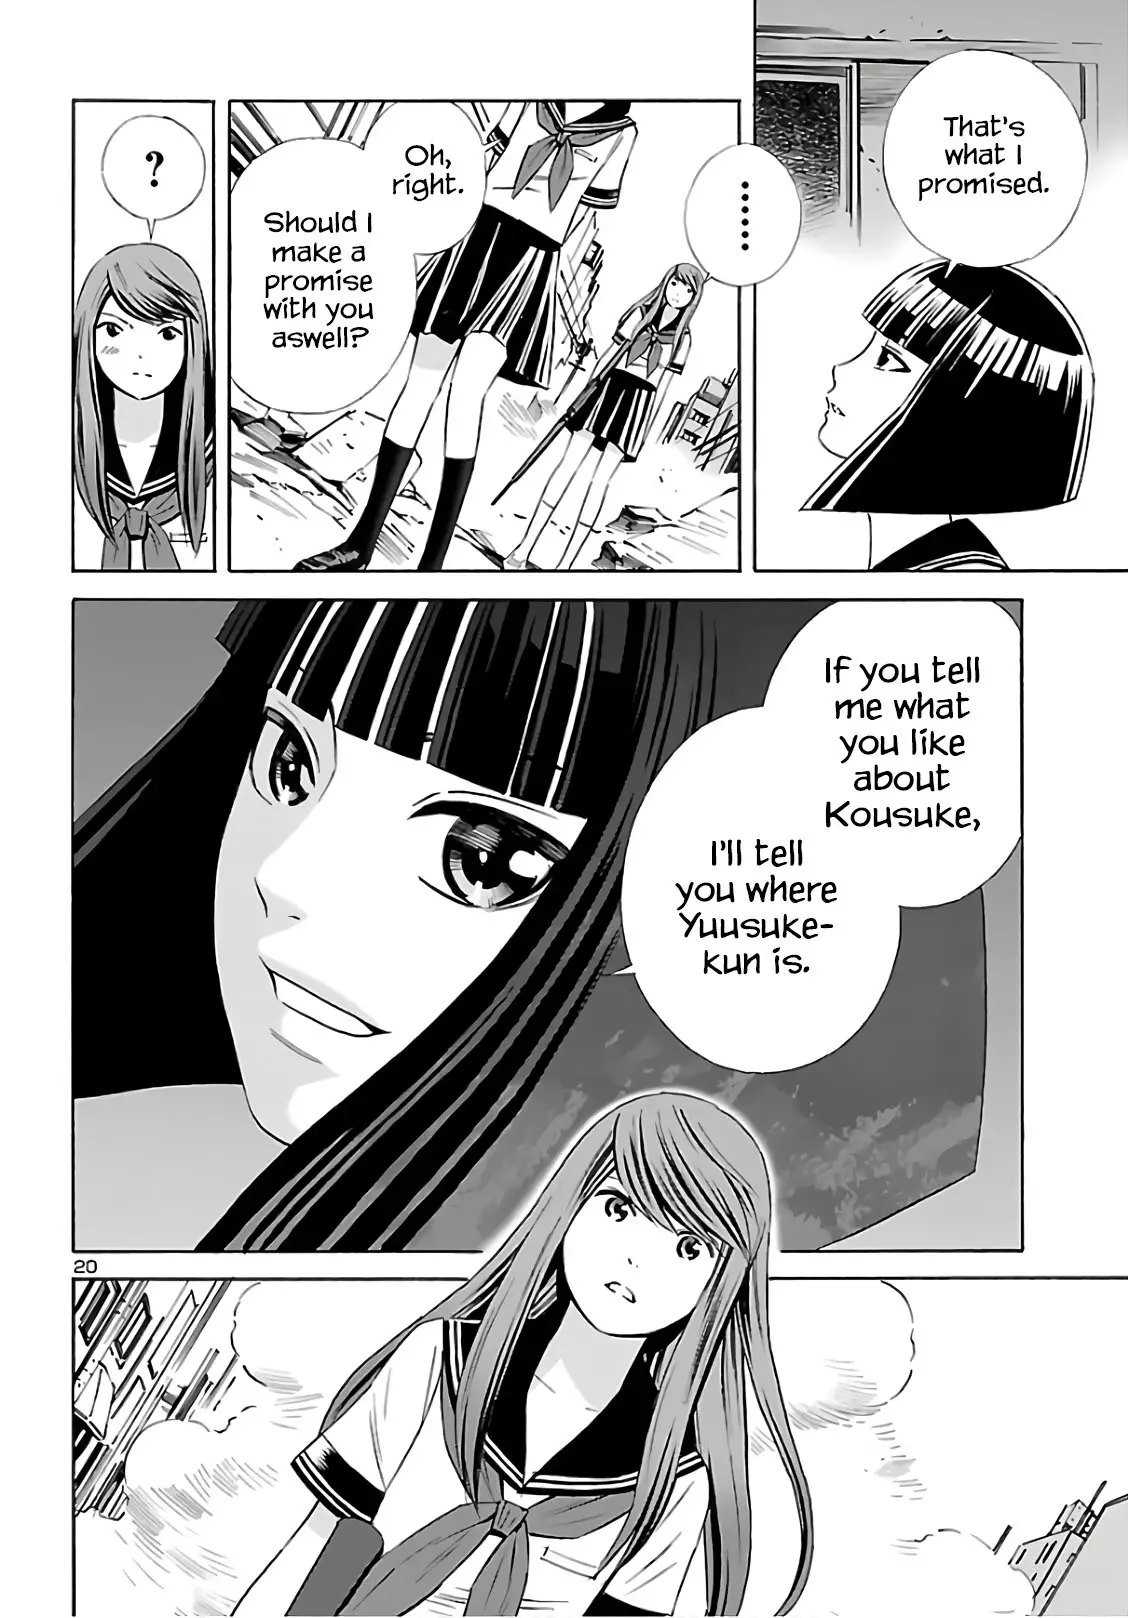 24-Ku No Hanako-San - 9 page 20